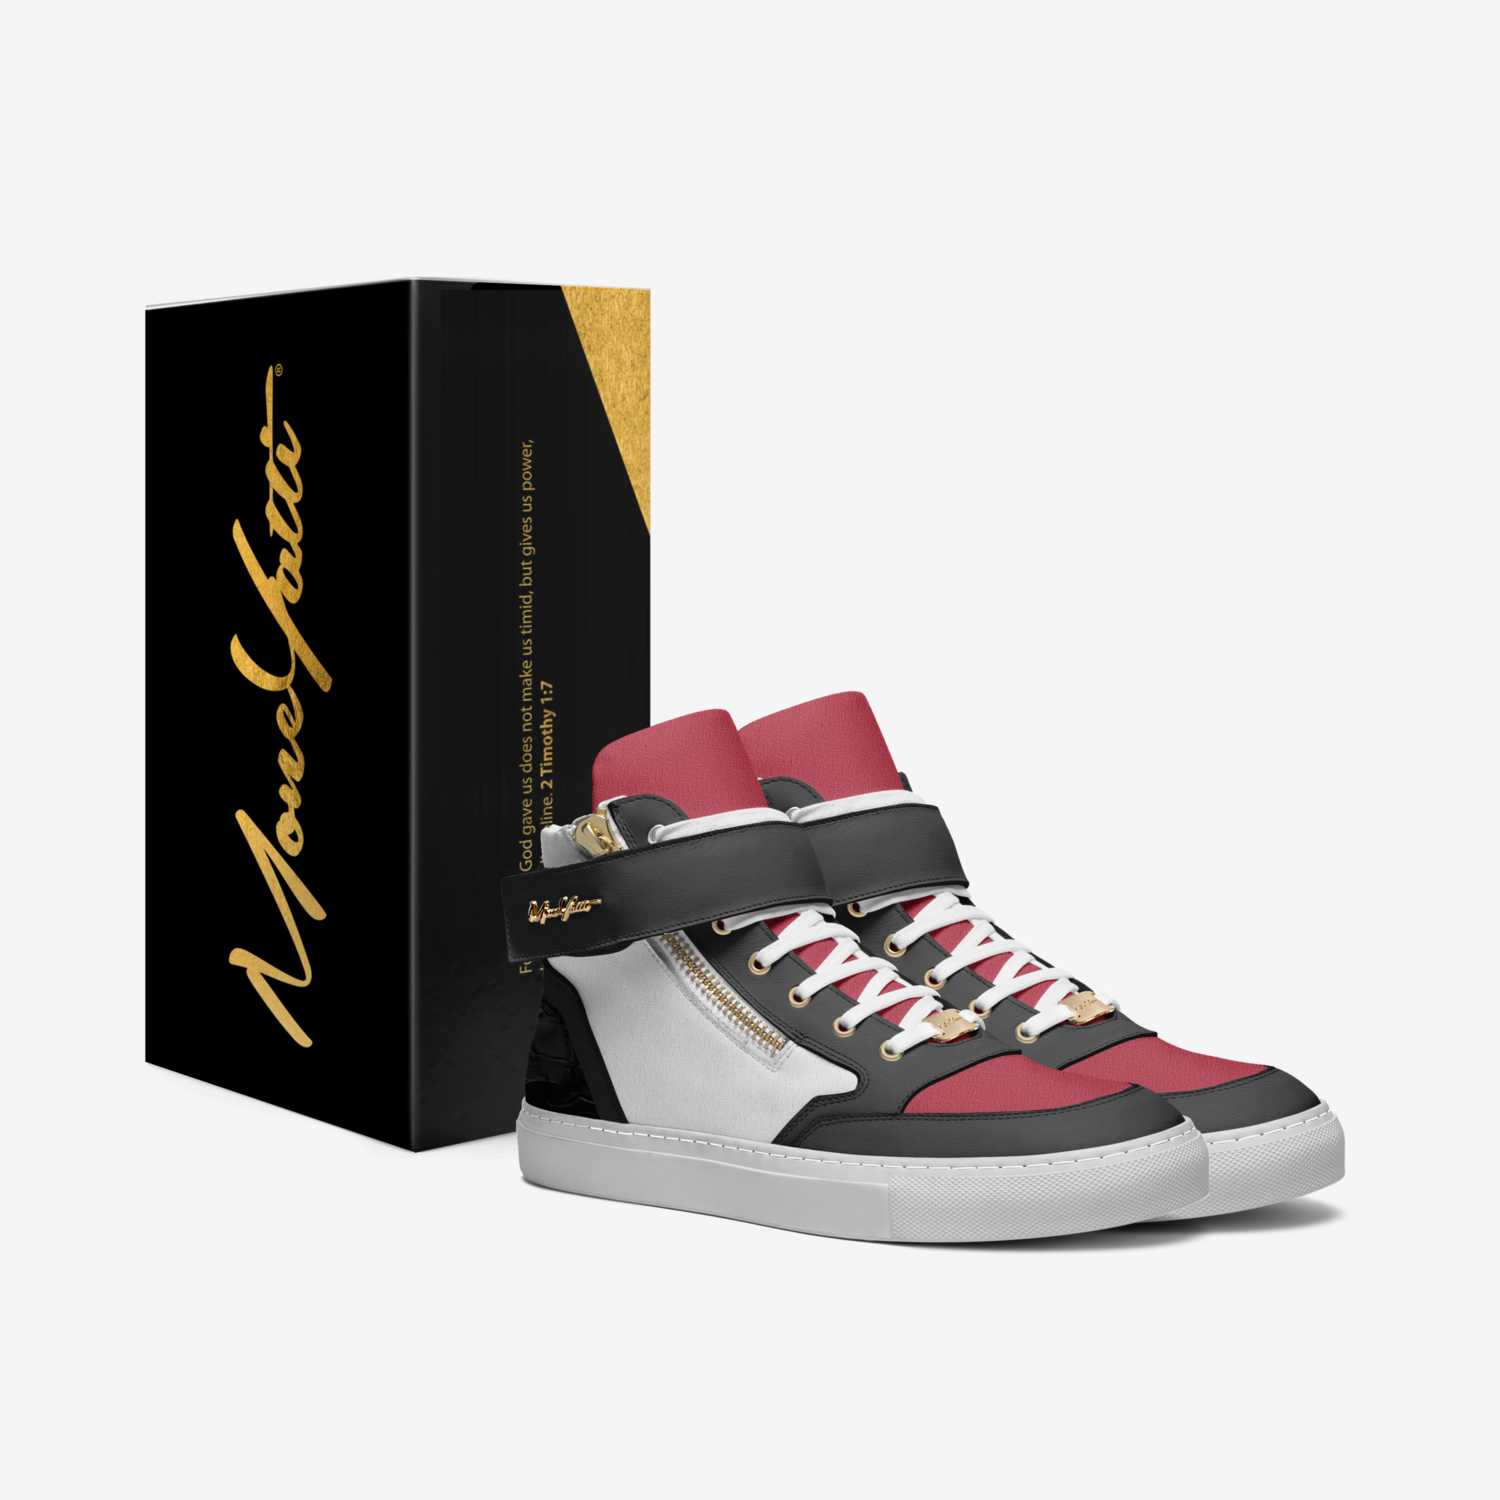 MONEYATTI G1 custom made in Italy shoes by Moneyatti Brand | Box view